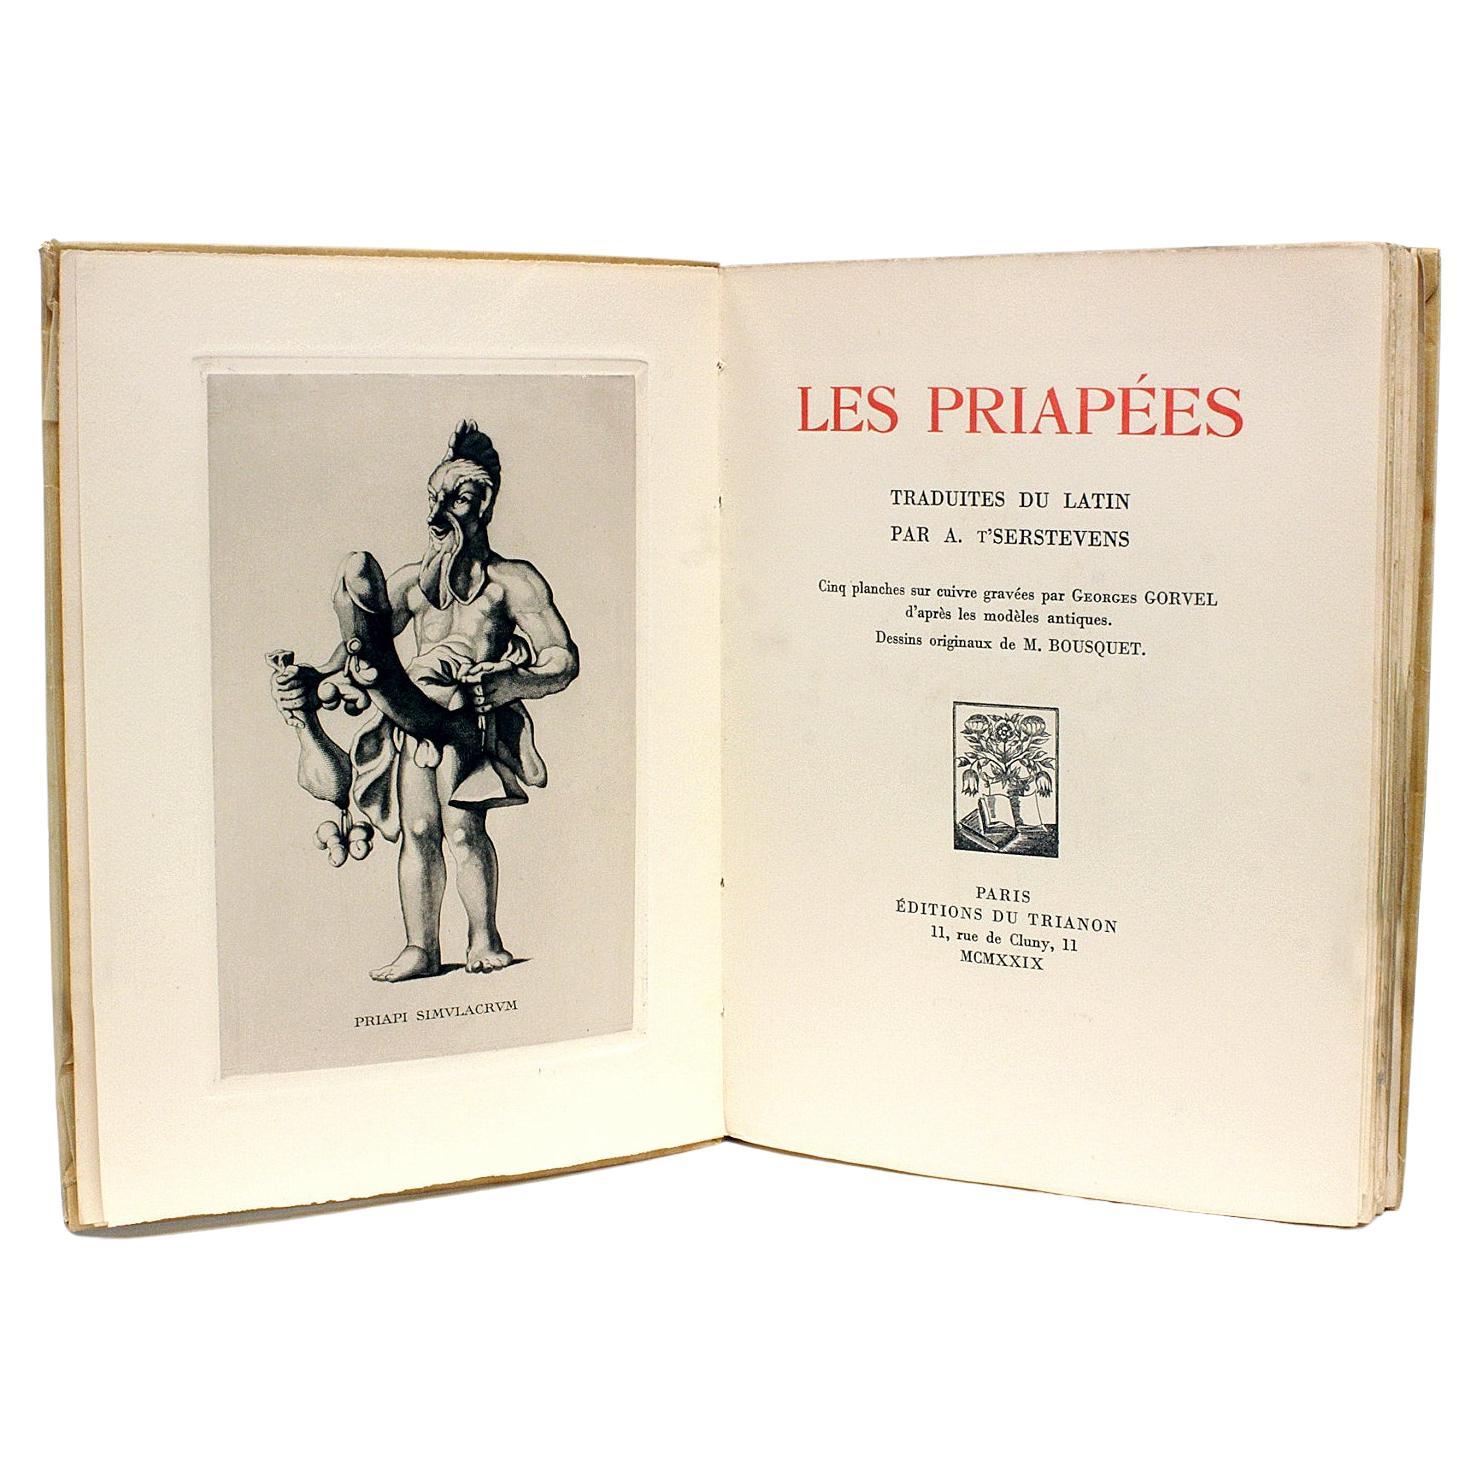 A. T'Serstvens, Georges Gorvel, M. Bousquet, Les Priapees, 1929 For Sale